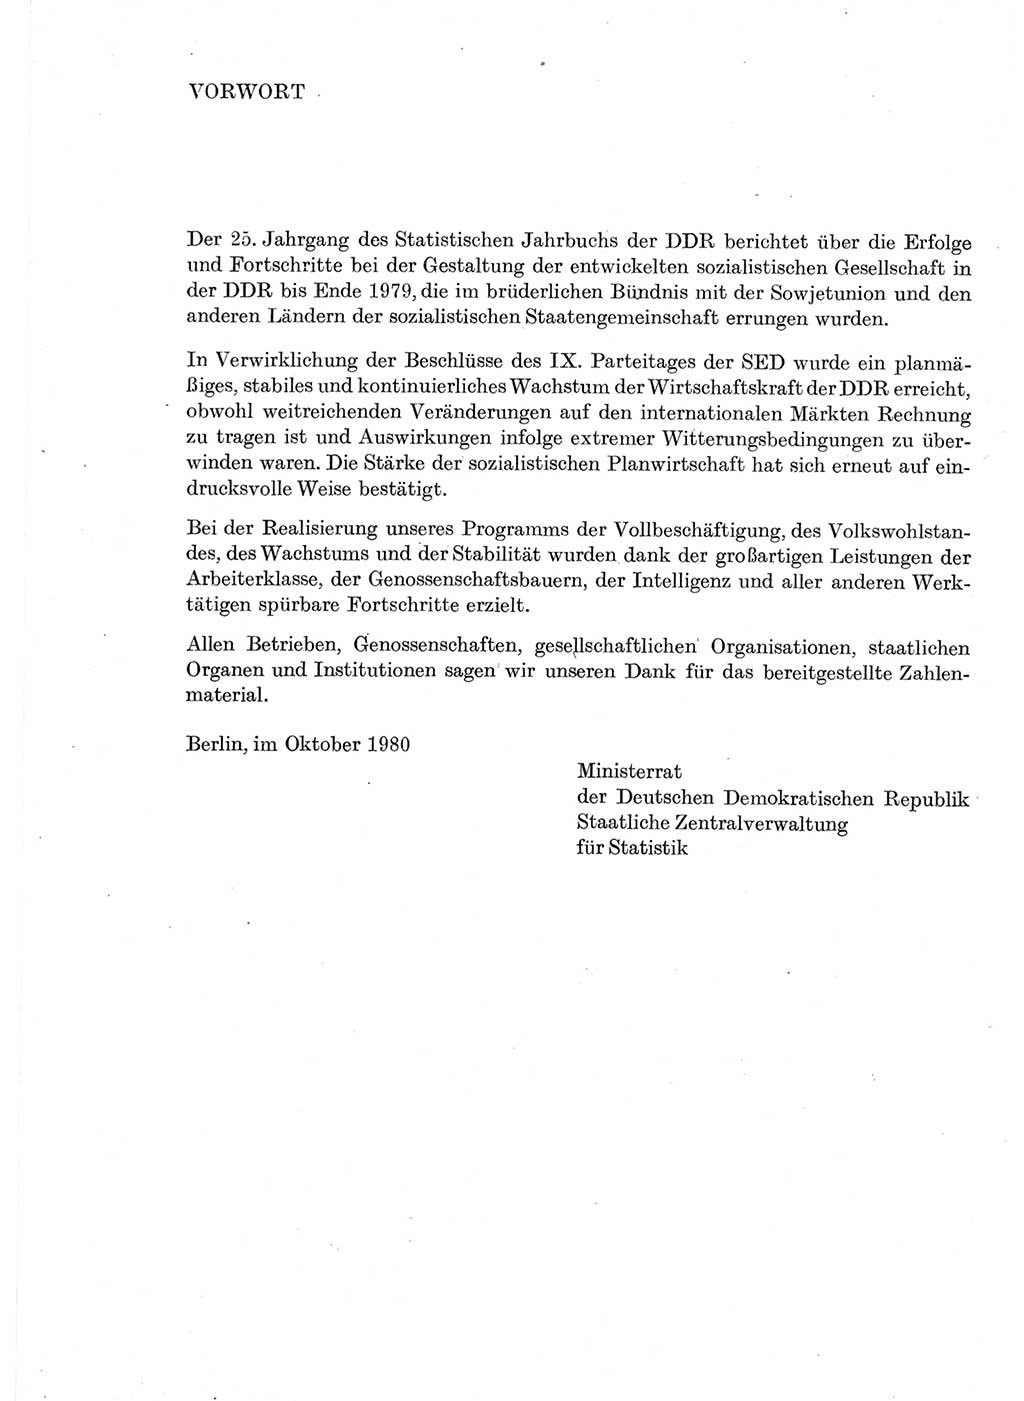 Statistisches Jahrbuch der Deutschen Demokratischen Republik (DDR) 1980, Seite 3 (Stat. Jb. DDR 1980, S. 3)